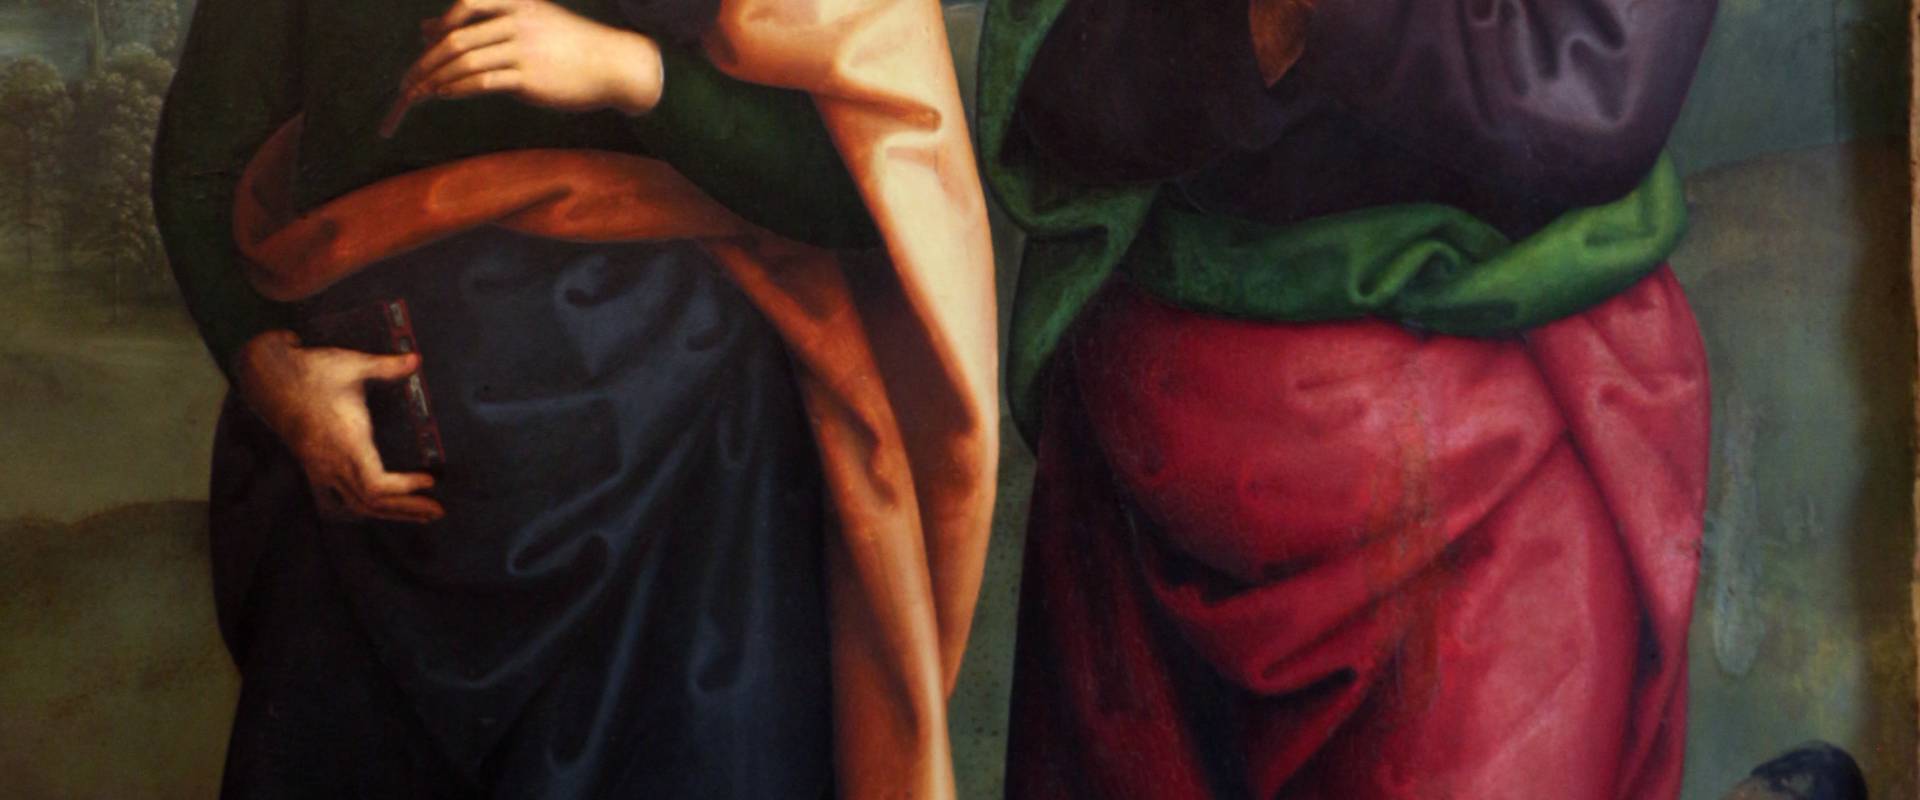 Perugino, madonna in gloria e santi, da s. giovanni in monte, 1500 ca. 04 foto di Sailko